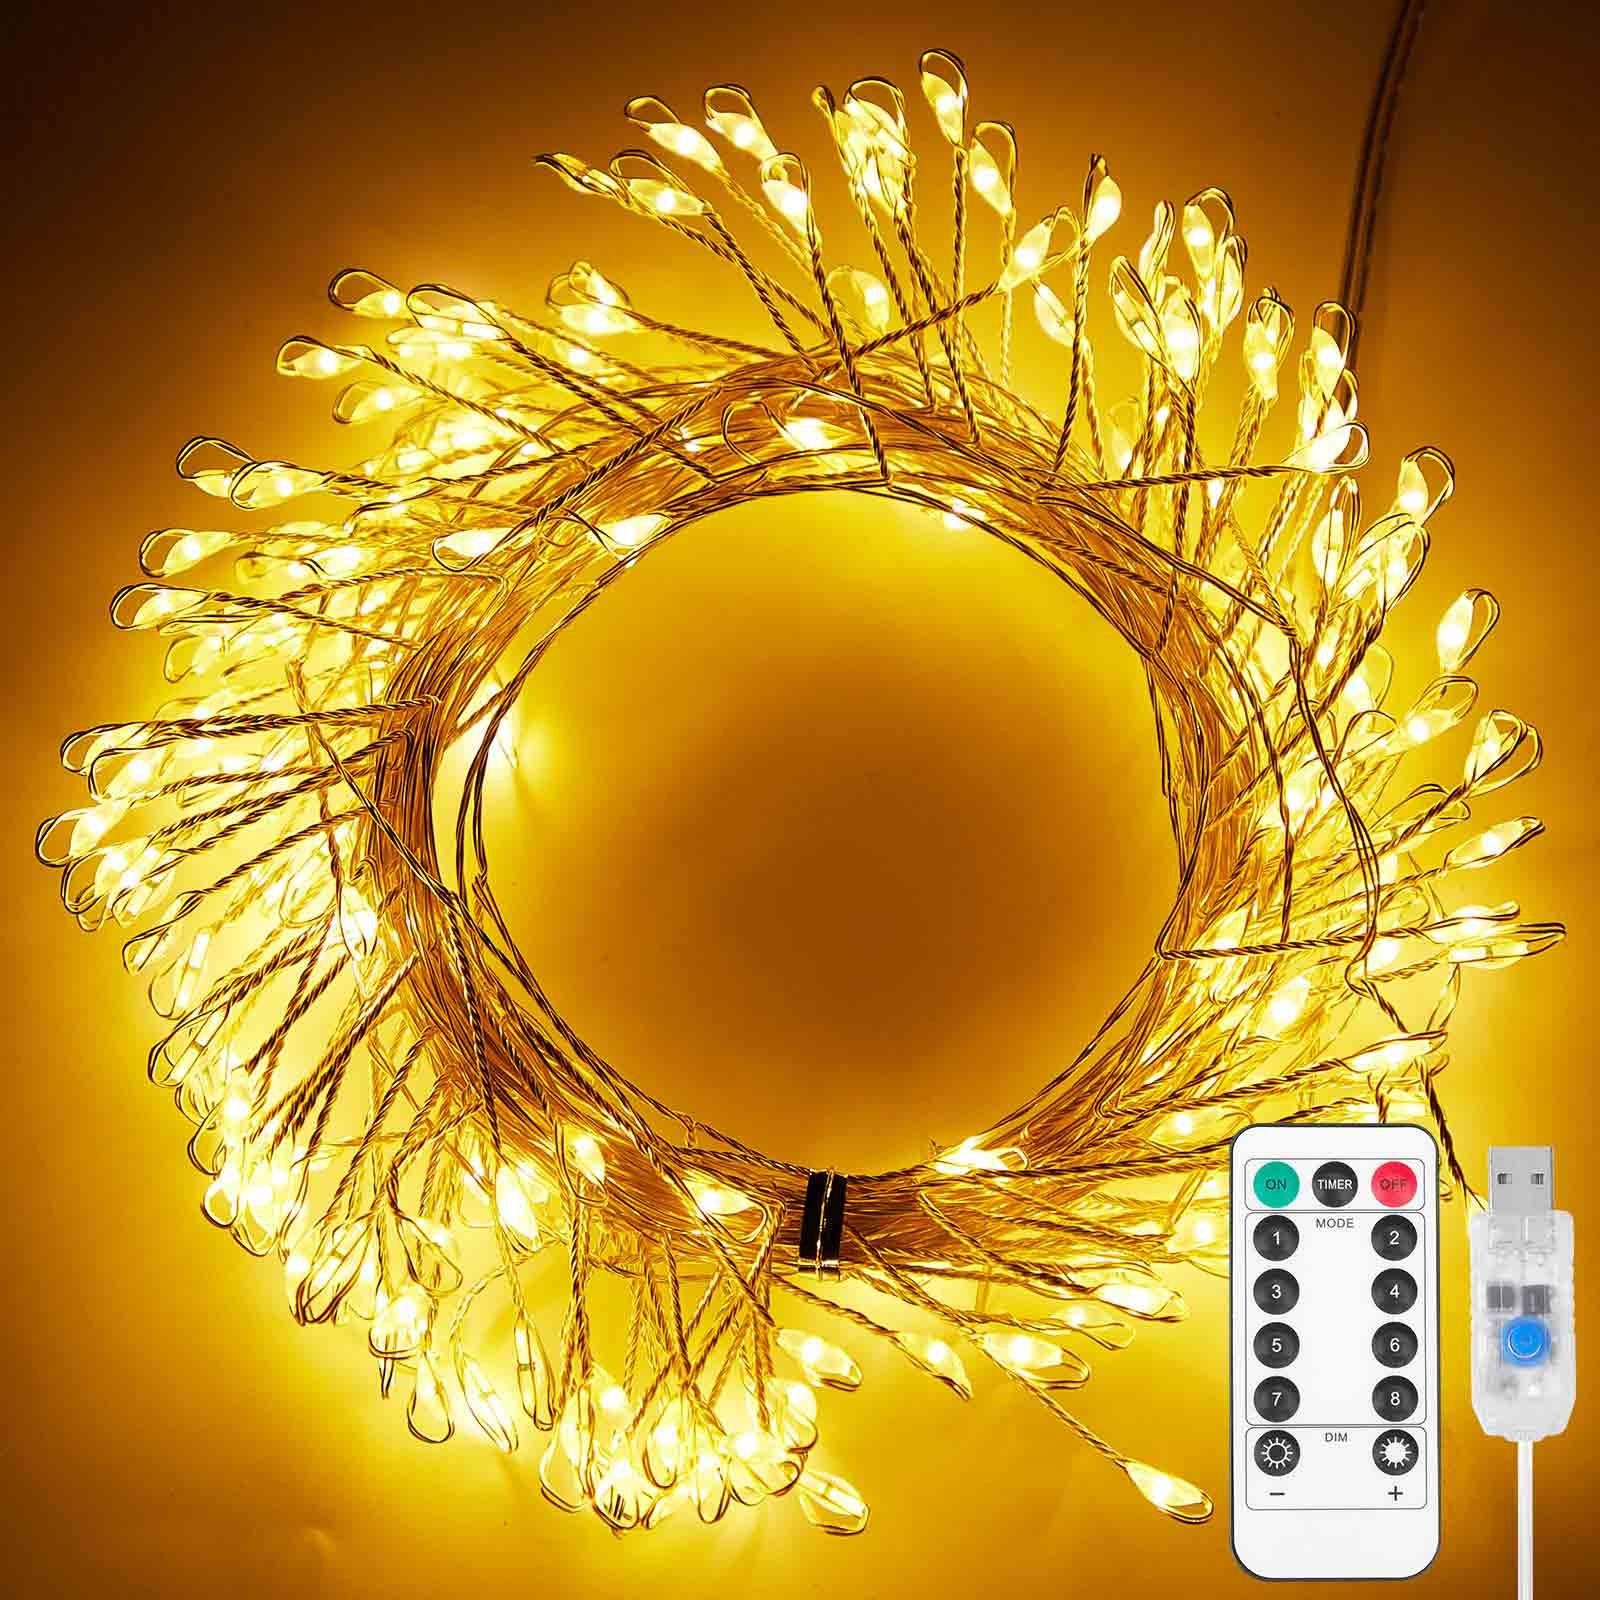 Rosnek LED-Lichterkette 3M/6M, dimmbar, wasserdicht, für Weihnachten Hochzeit Party, Fernbedienung, USB, Timer, Garten Fest Deko Warmweiß